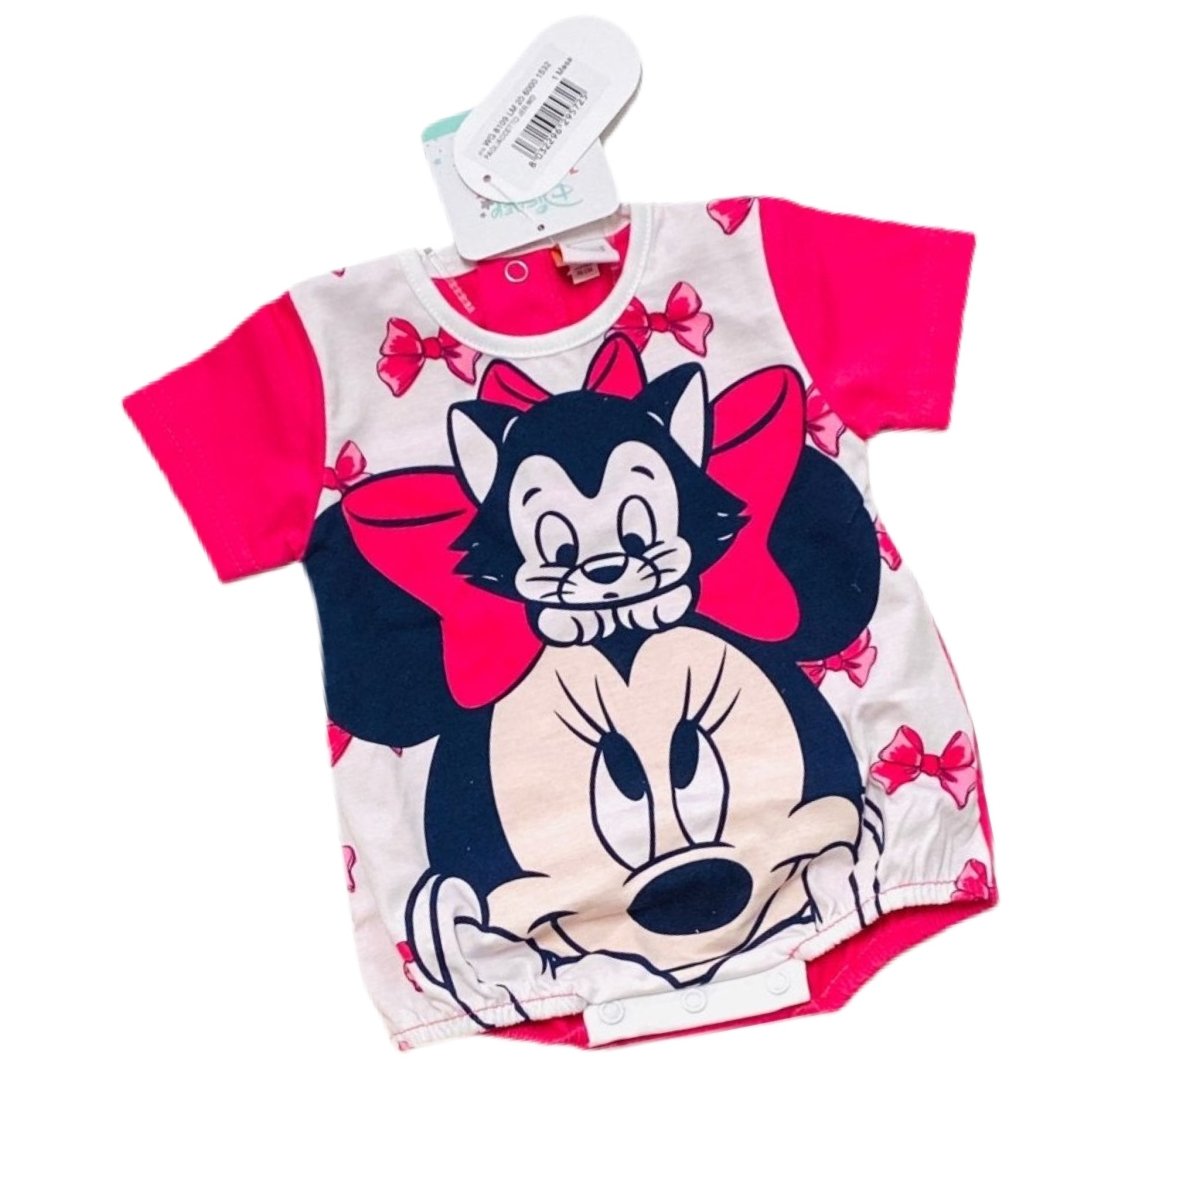 Pagliaccetto Disney Mickey Mouse 100% Cotone - Mstore016 - Tutina cotone disney - Disney